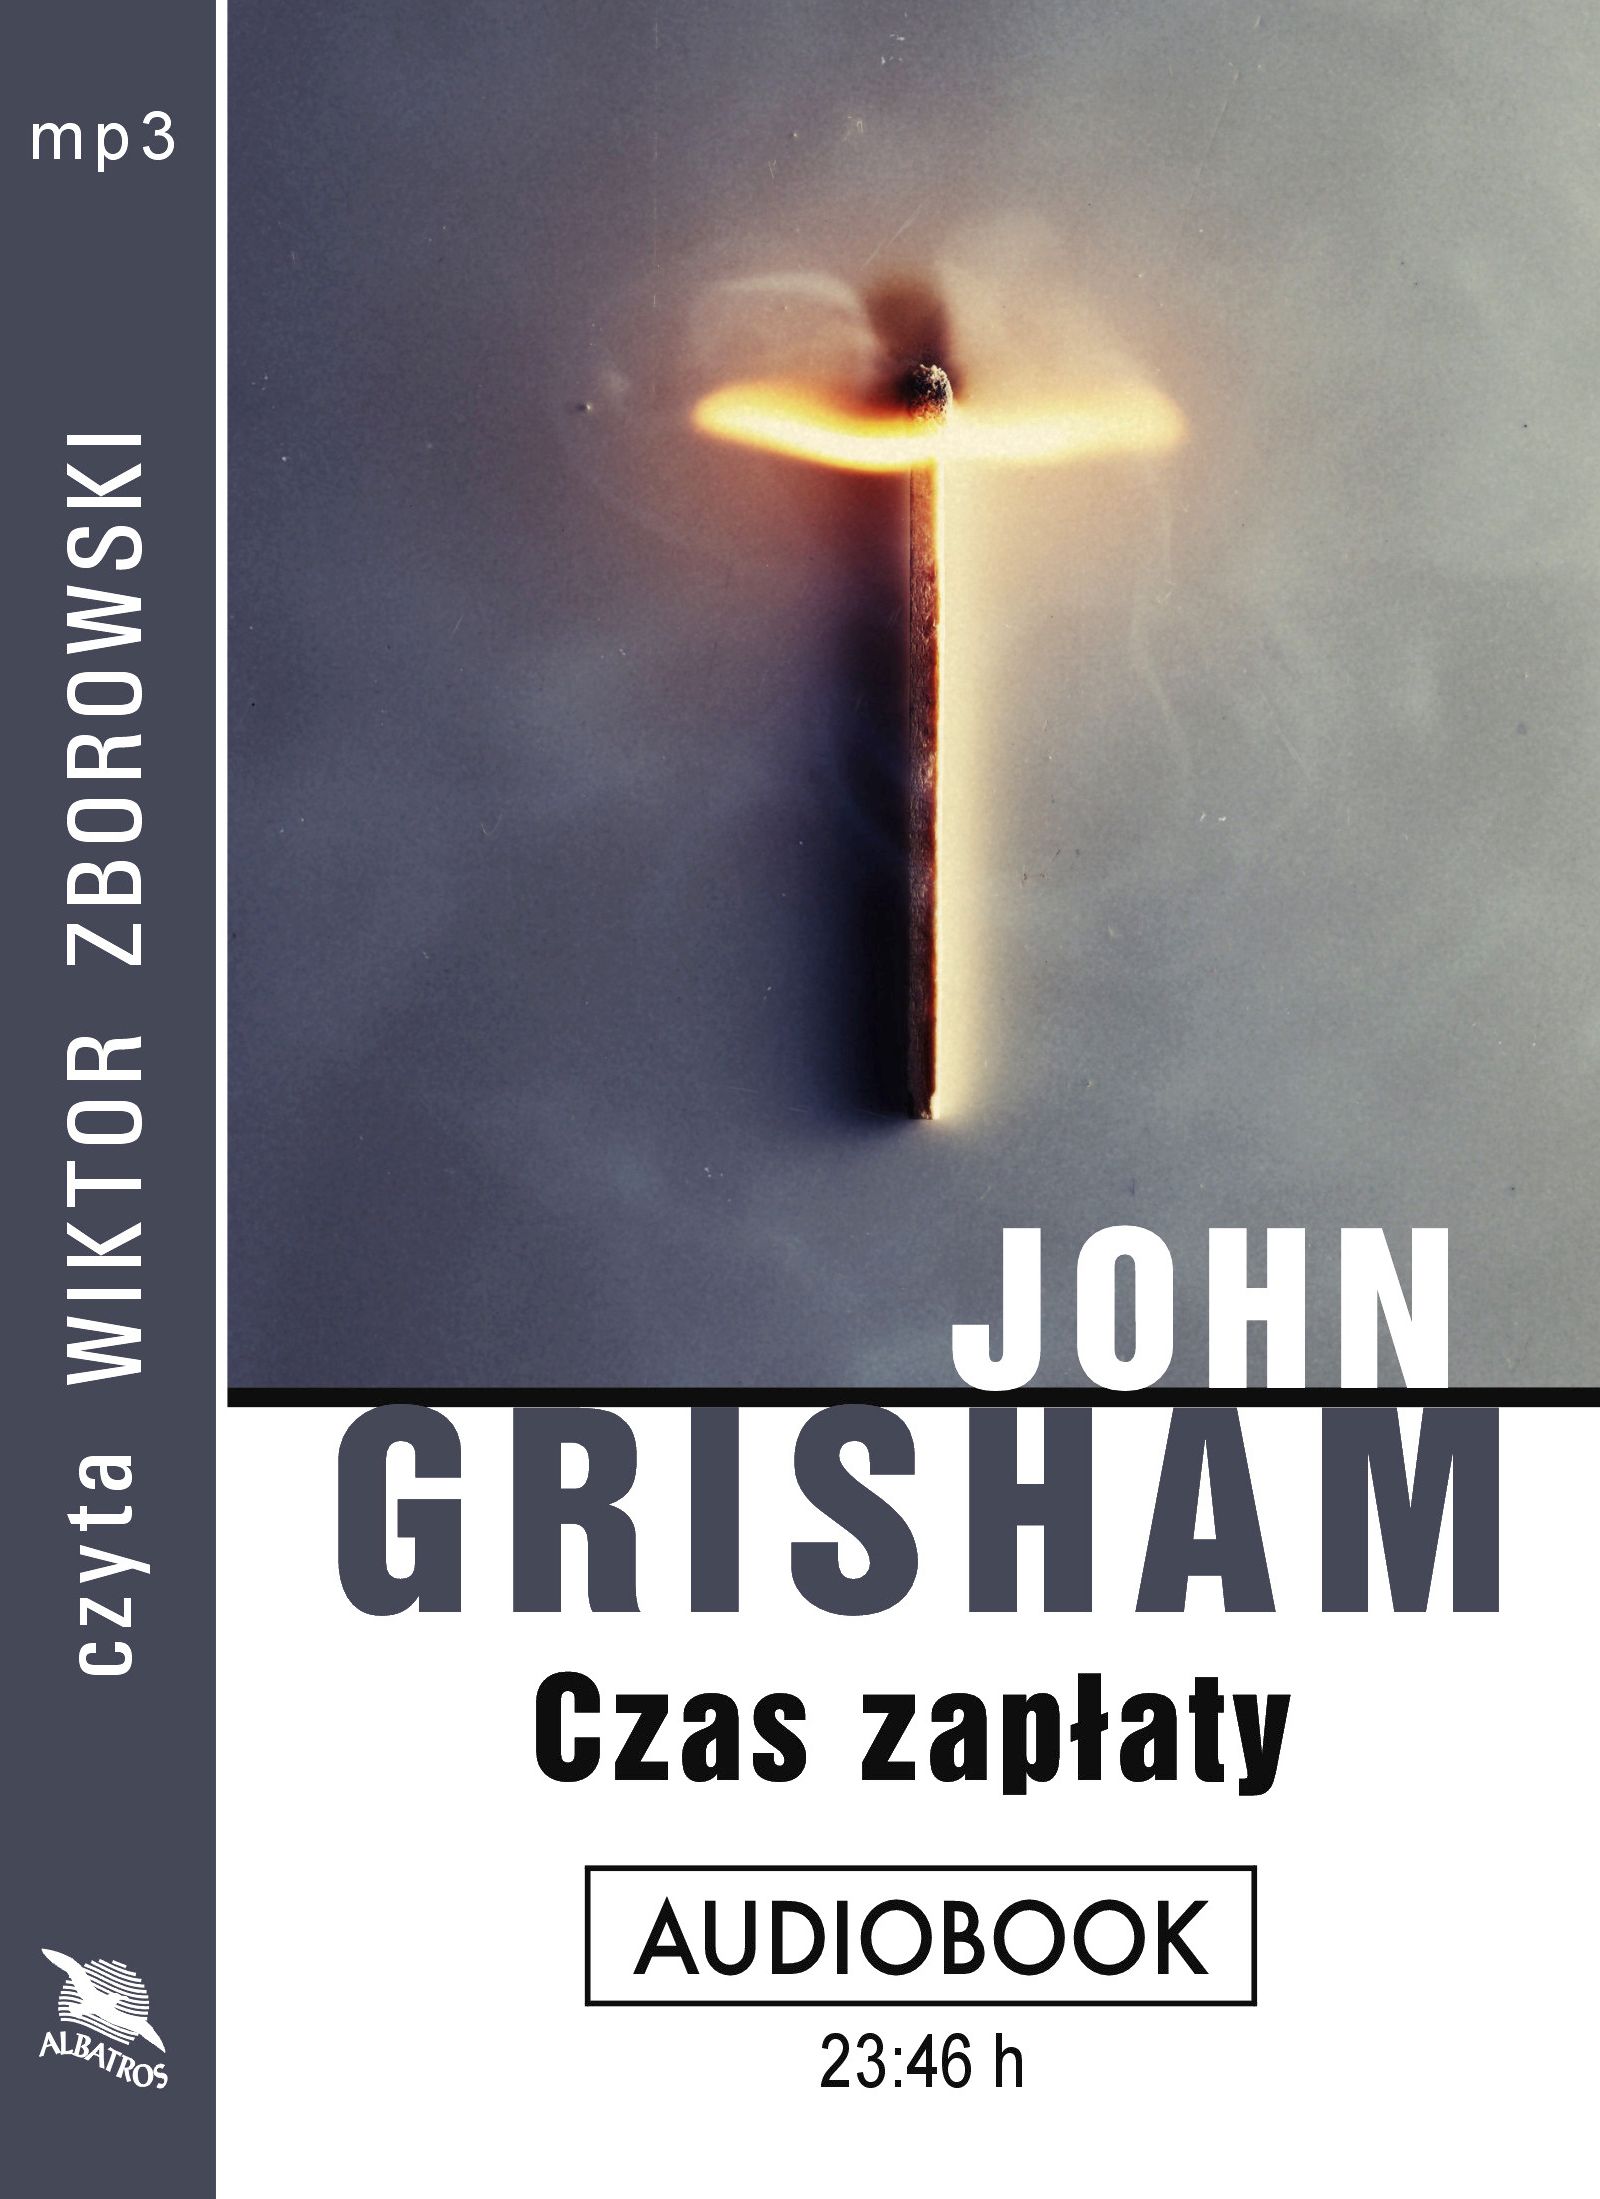 GRISHAM JOHN - CZAS ZAPŁATY